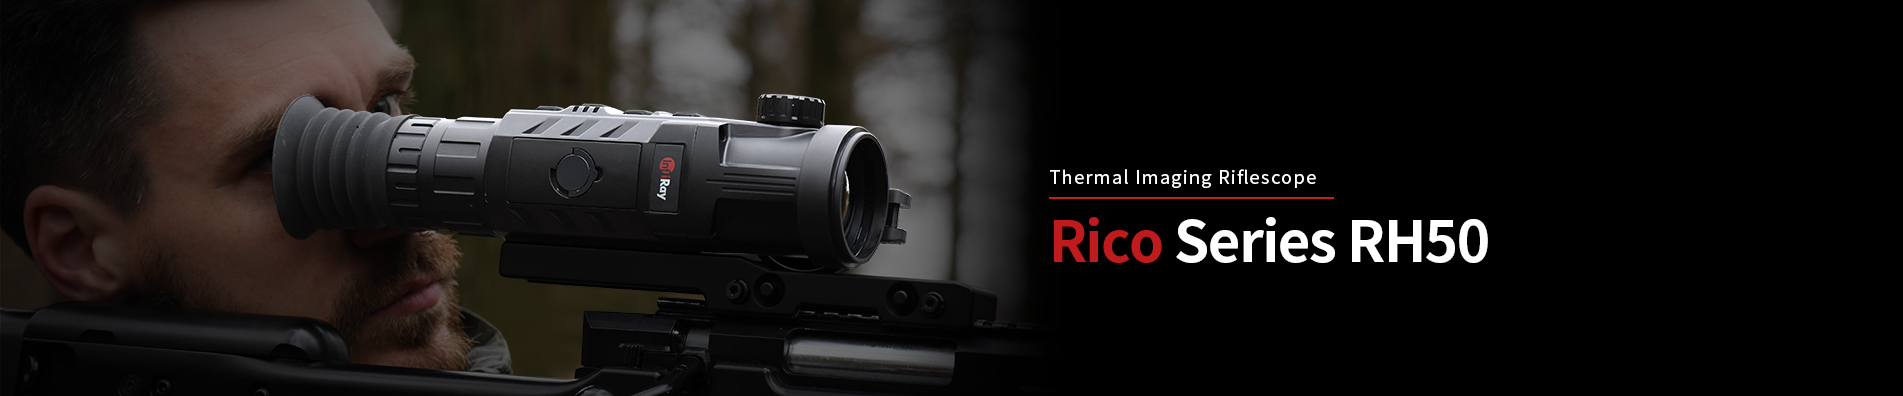 Thermal Imaging Riflescope Rico Series